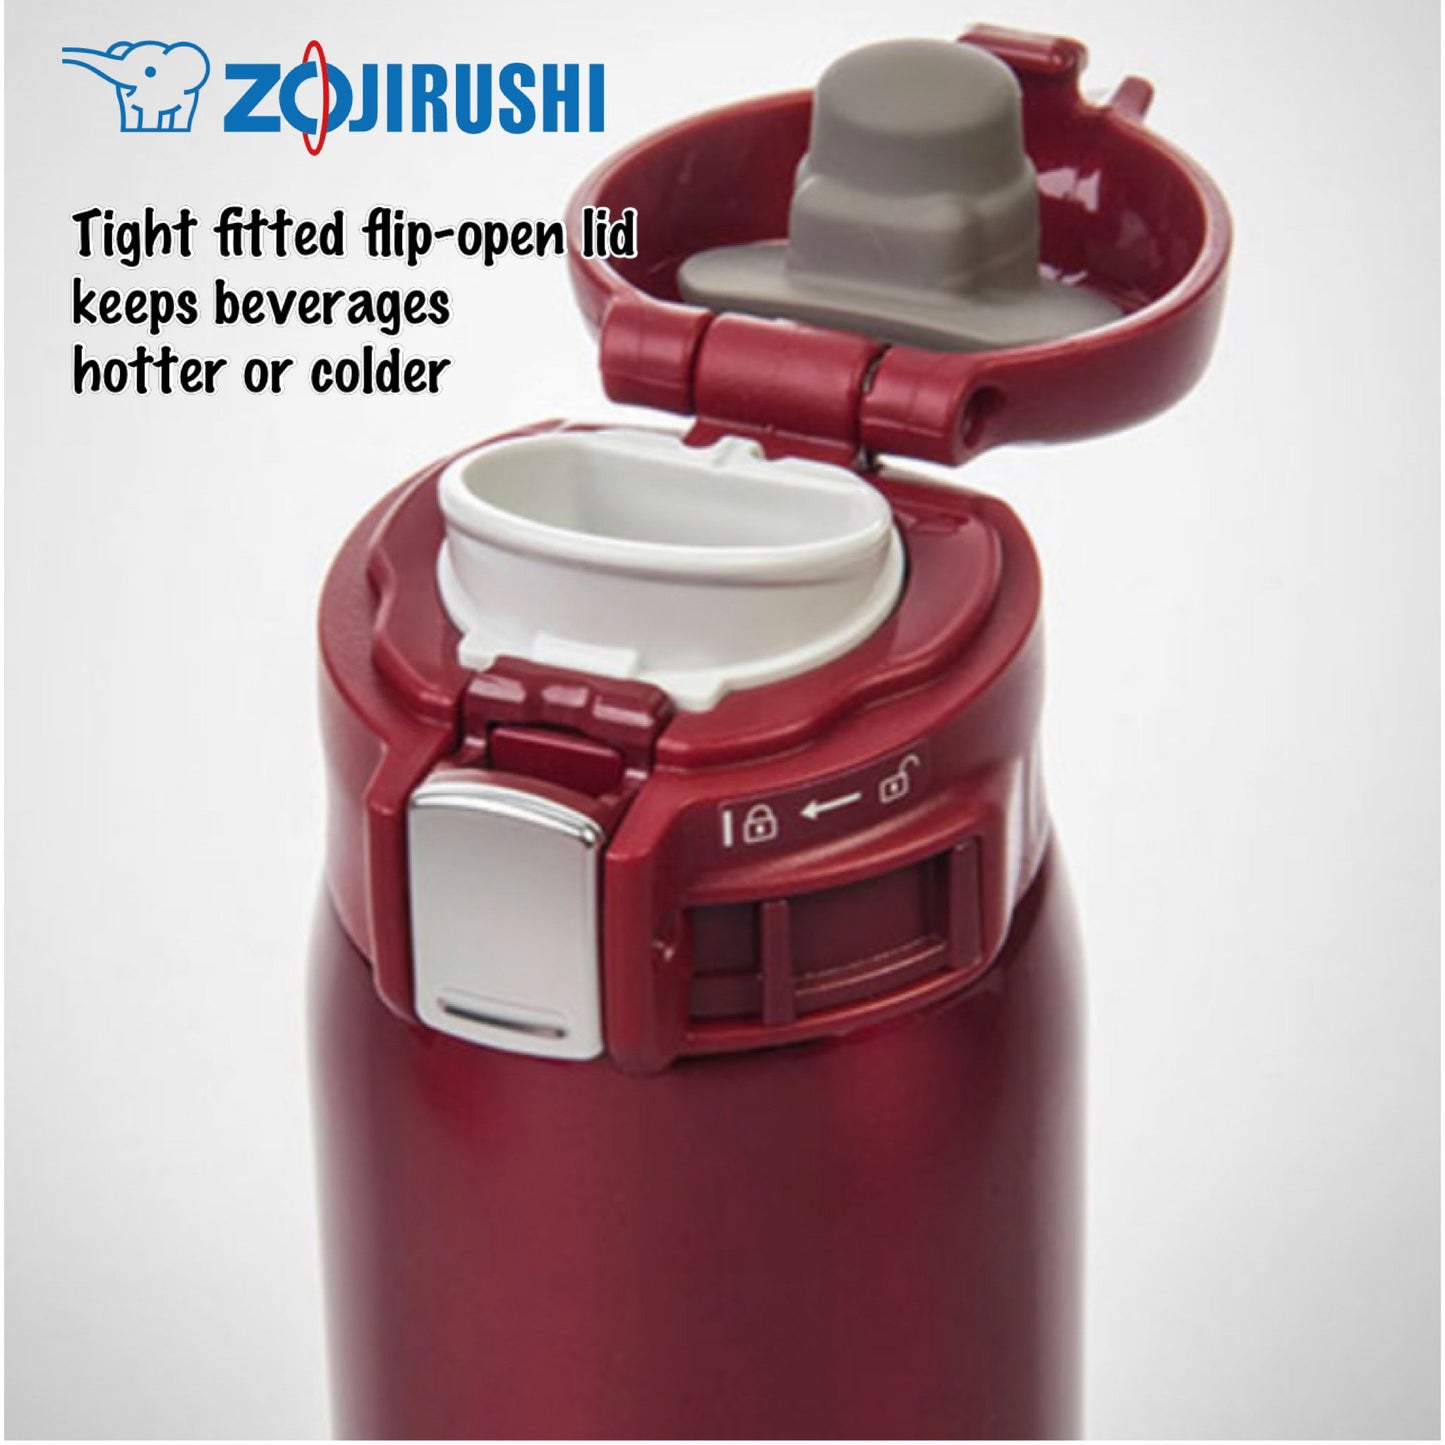 Zojirushi Stainless Metal SM-SD60 (FREE Tamrac Water Bottle Holder)